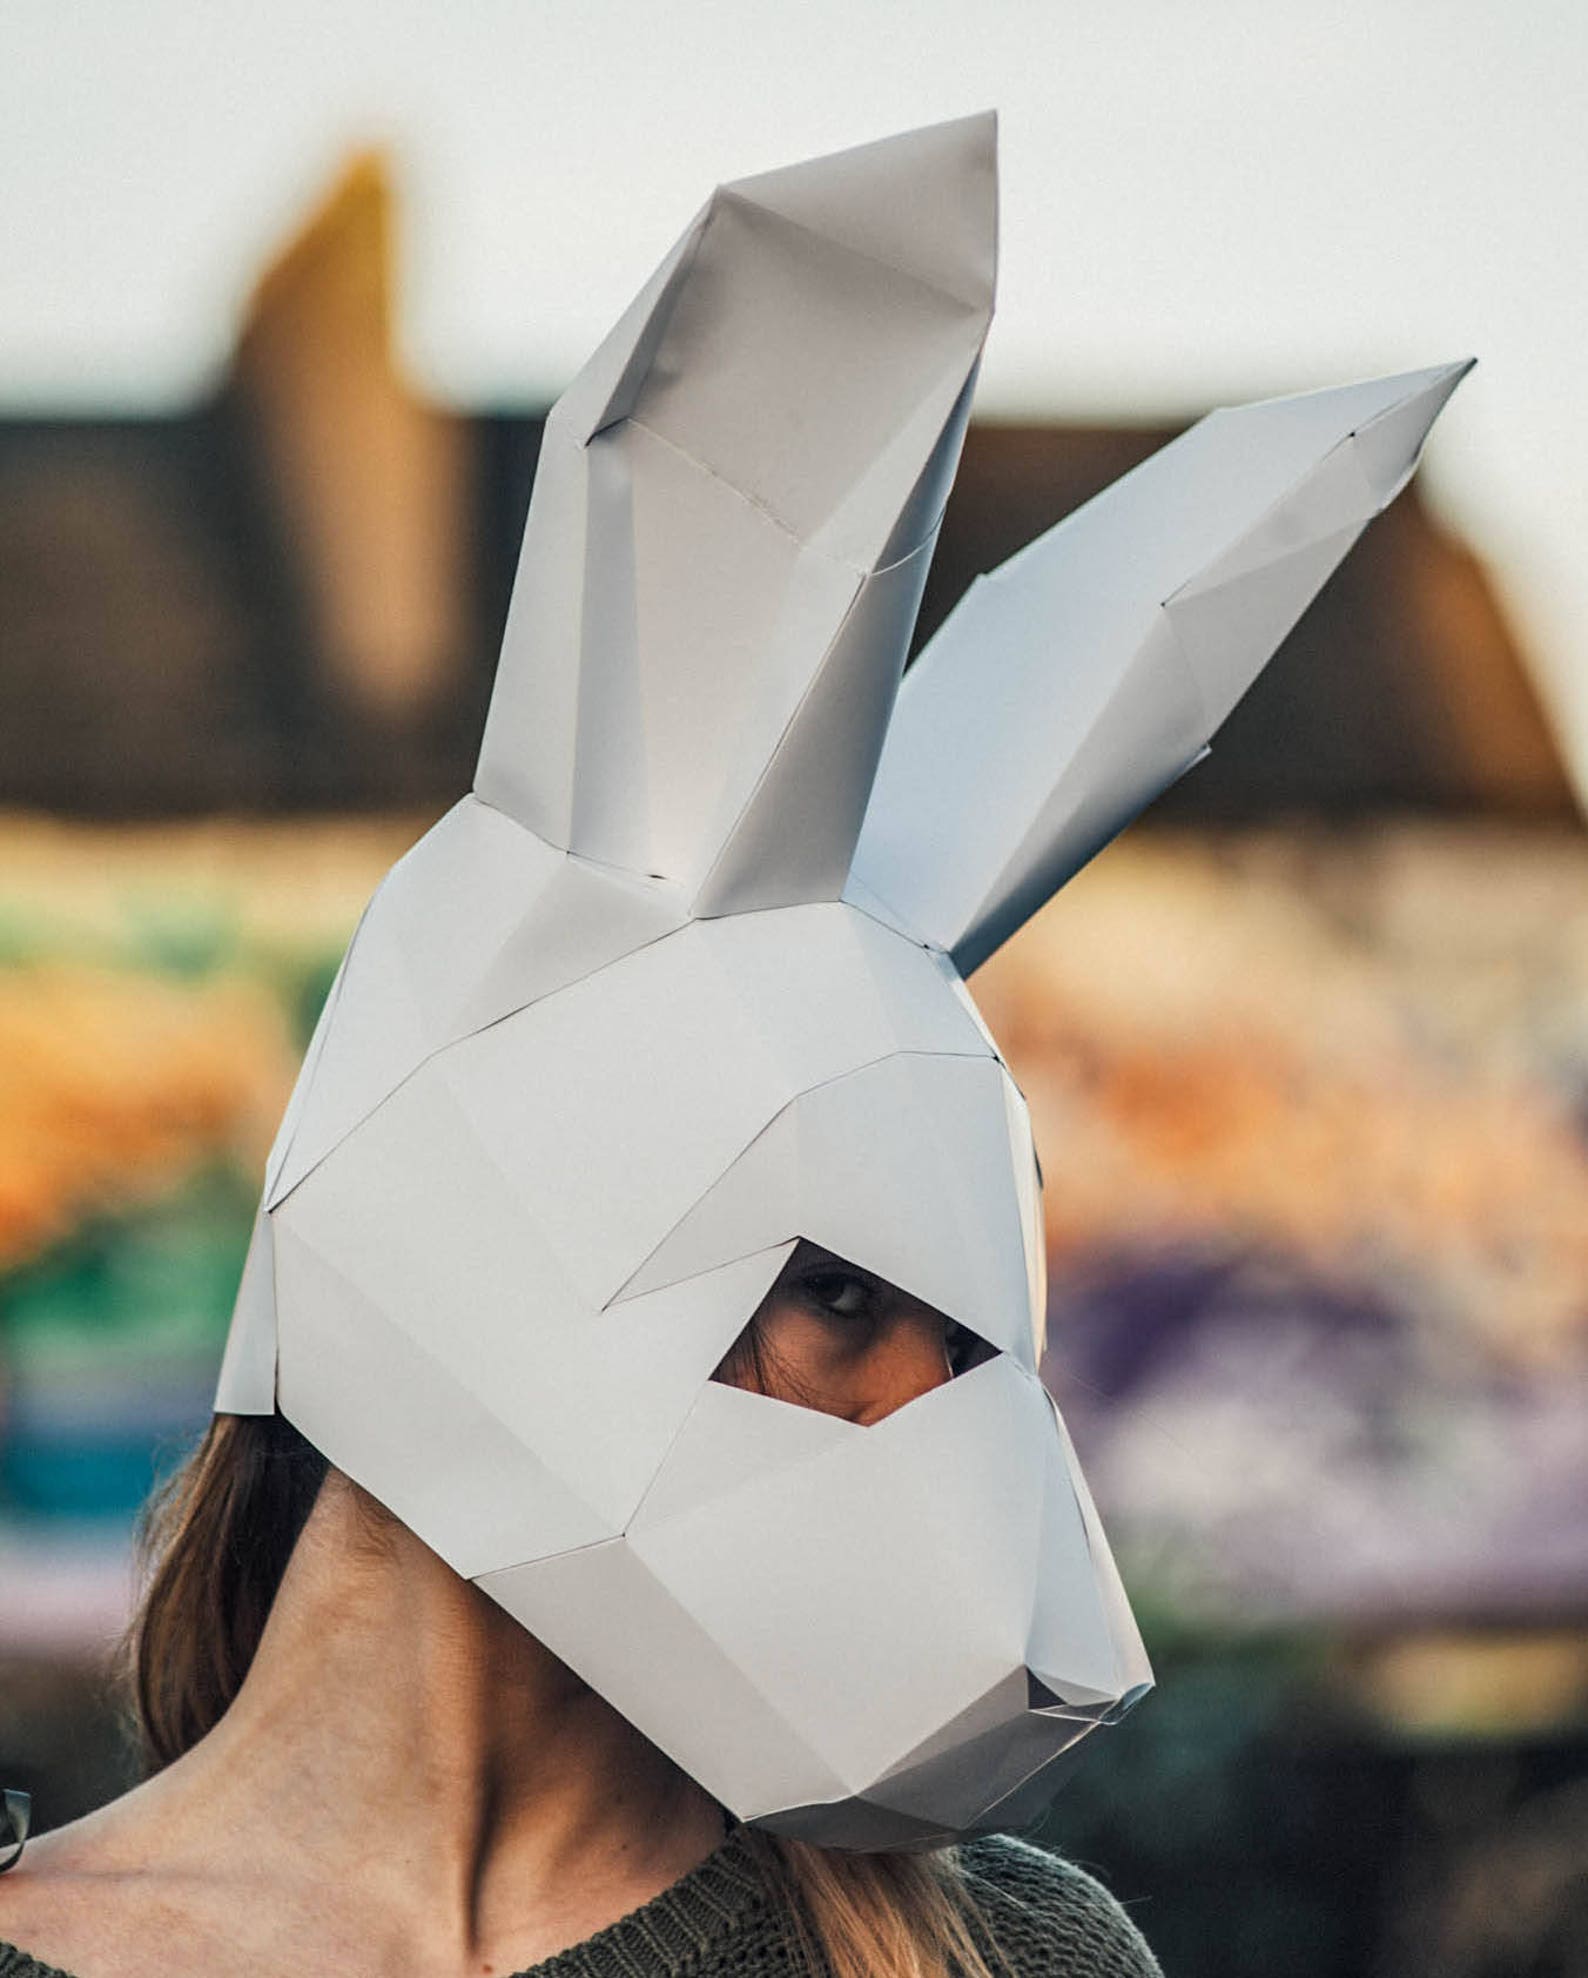 3д маска из бумаги. Паперкрафт Bunny. Papercraft Mask кролик. Объемная маска. Полигональные маски.